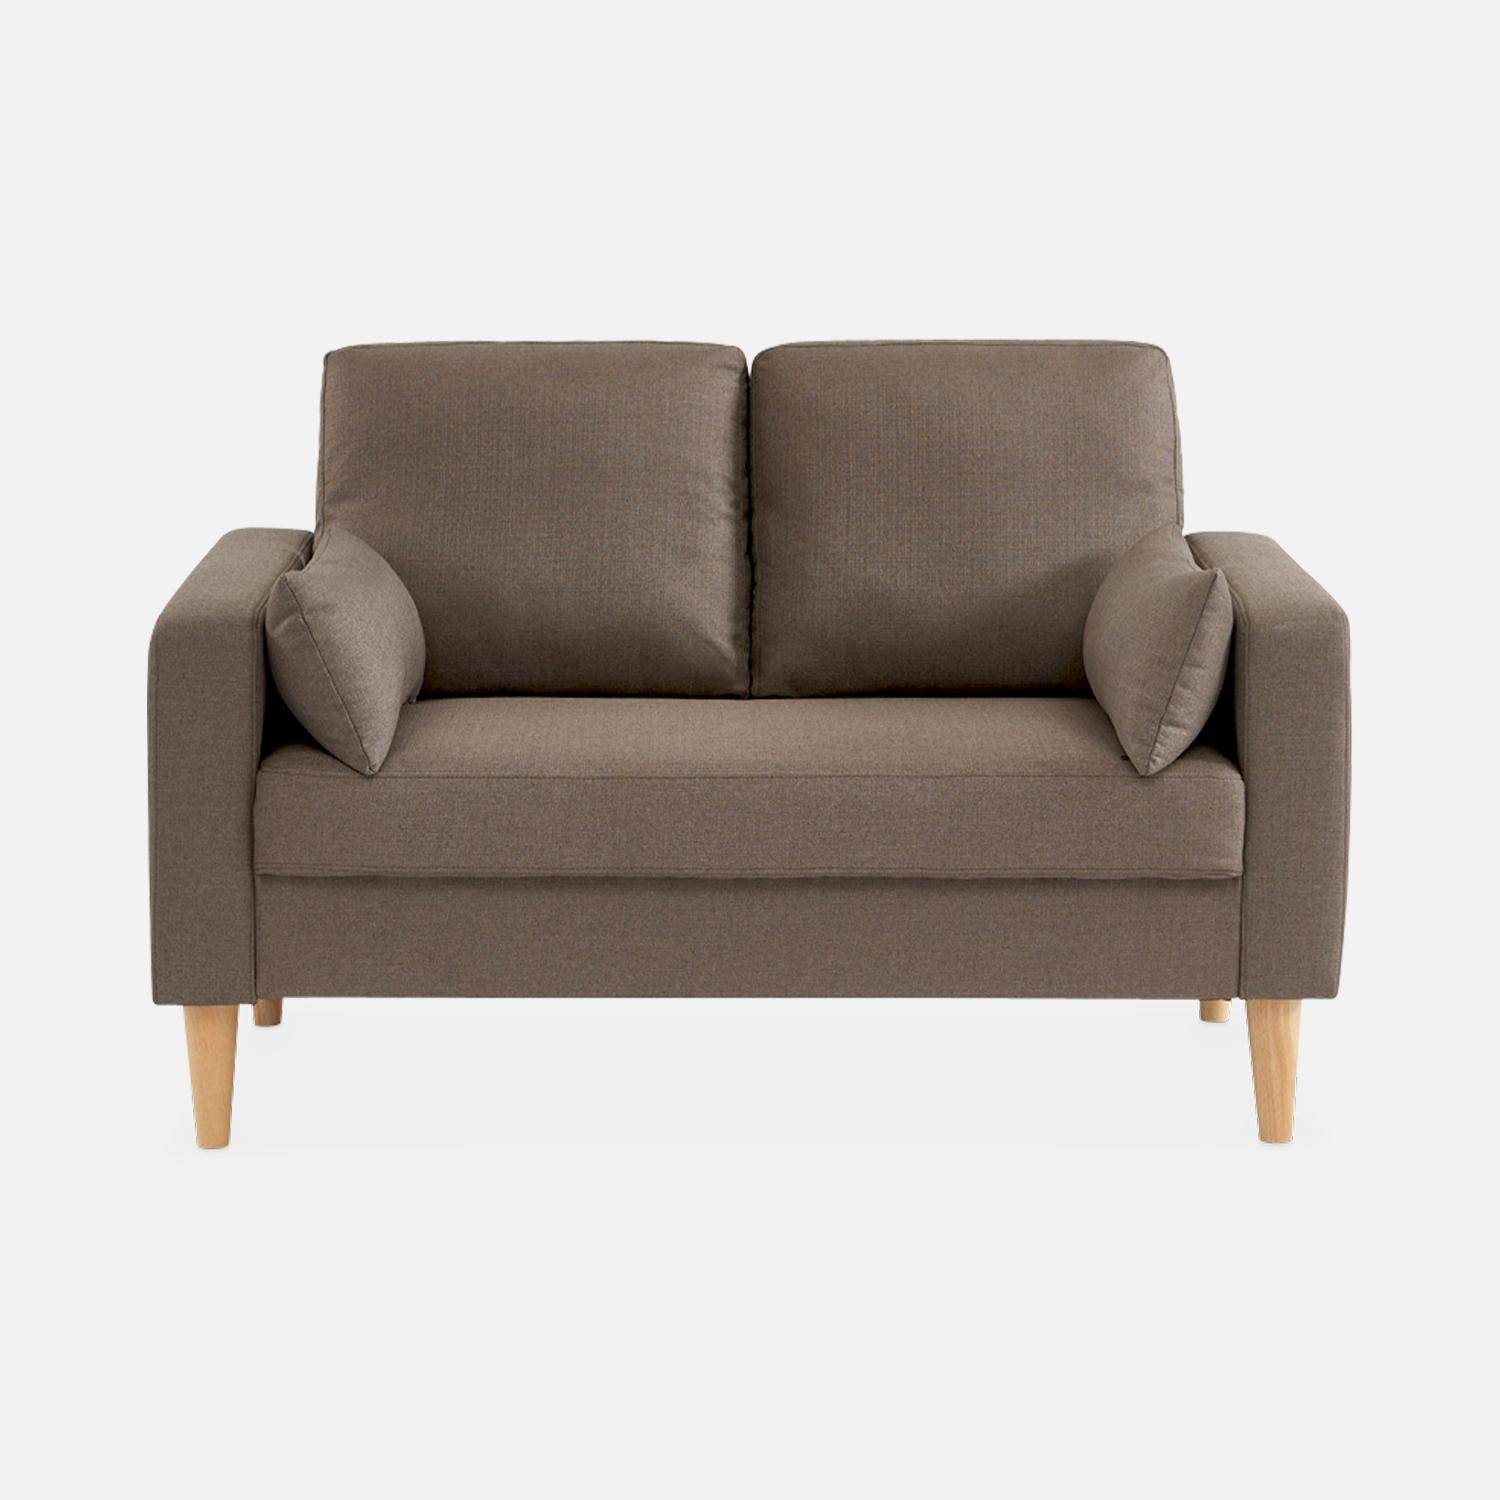 2-Sitz Sofa - Bjorn 2 - Braun, Gestell aus Eukalyptus, Bezug aus Polyester, Holzbeine, Sofa im skandinavischen Stil  Photo3